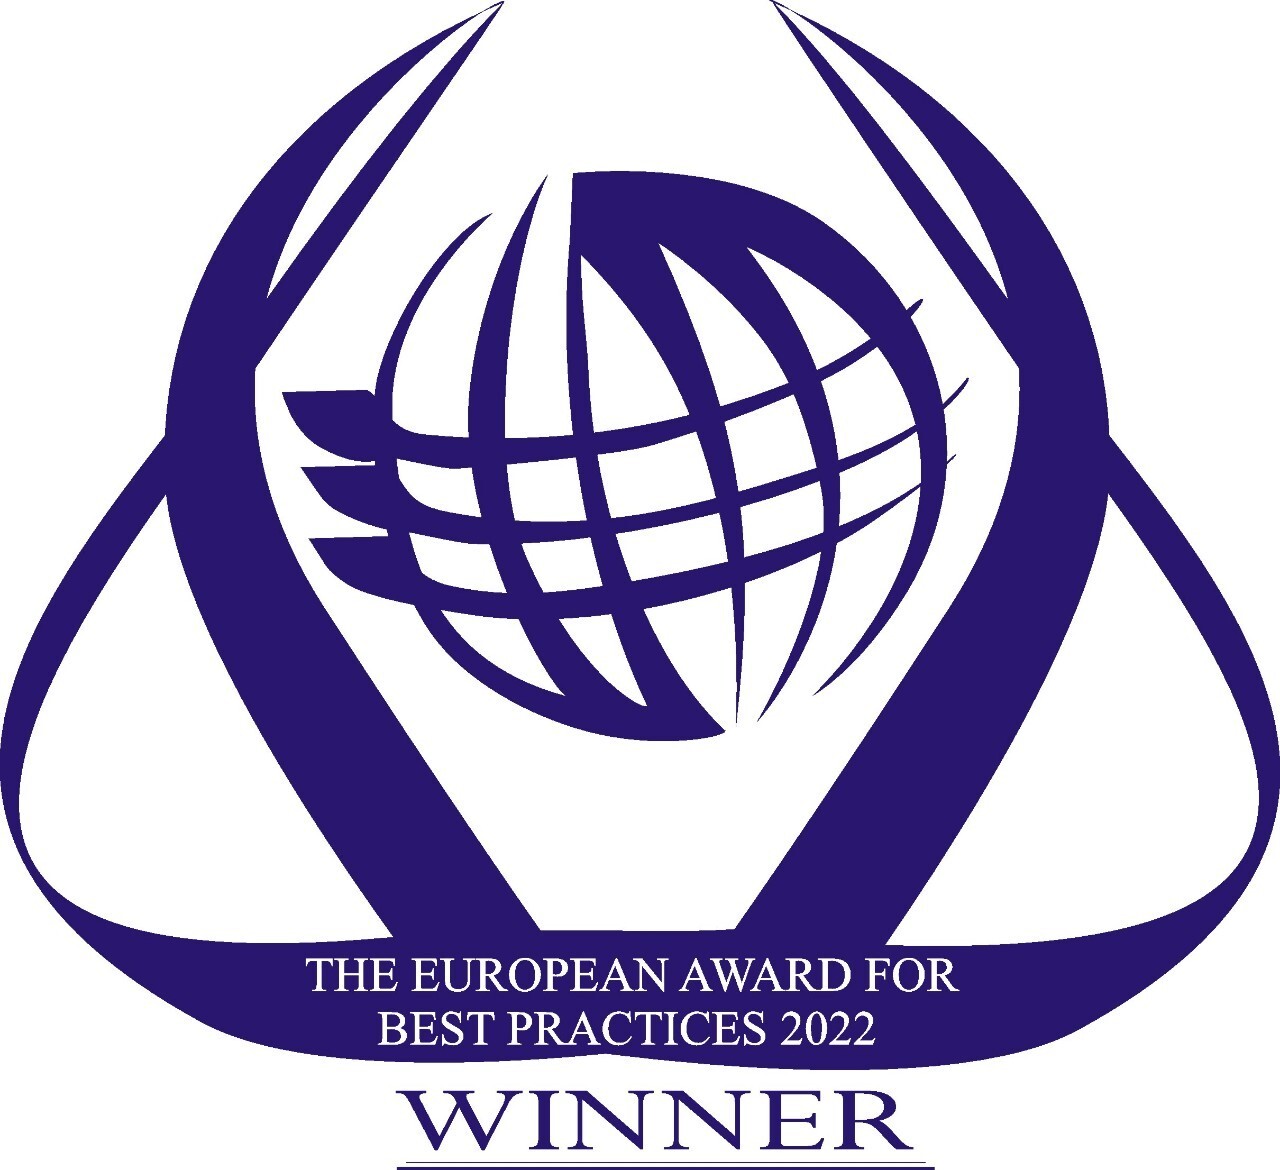 "สหพัฒน์" คว้ารางวัลอันทรงเกียรติเวทีระดับโลก The European Award for Best Practices 2022 จาก ESQR